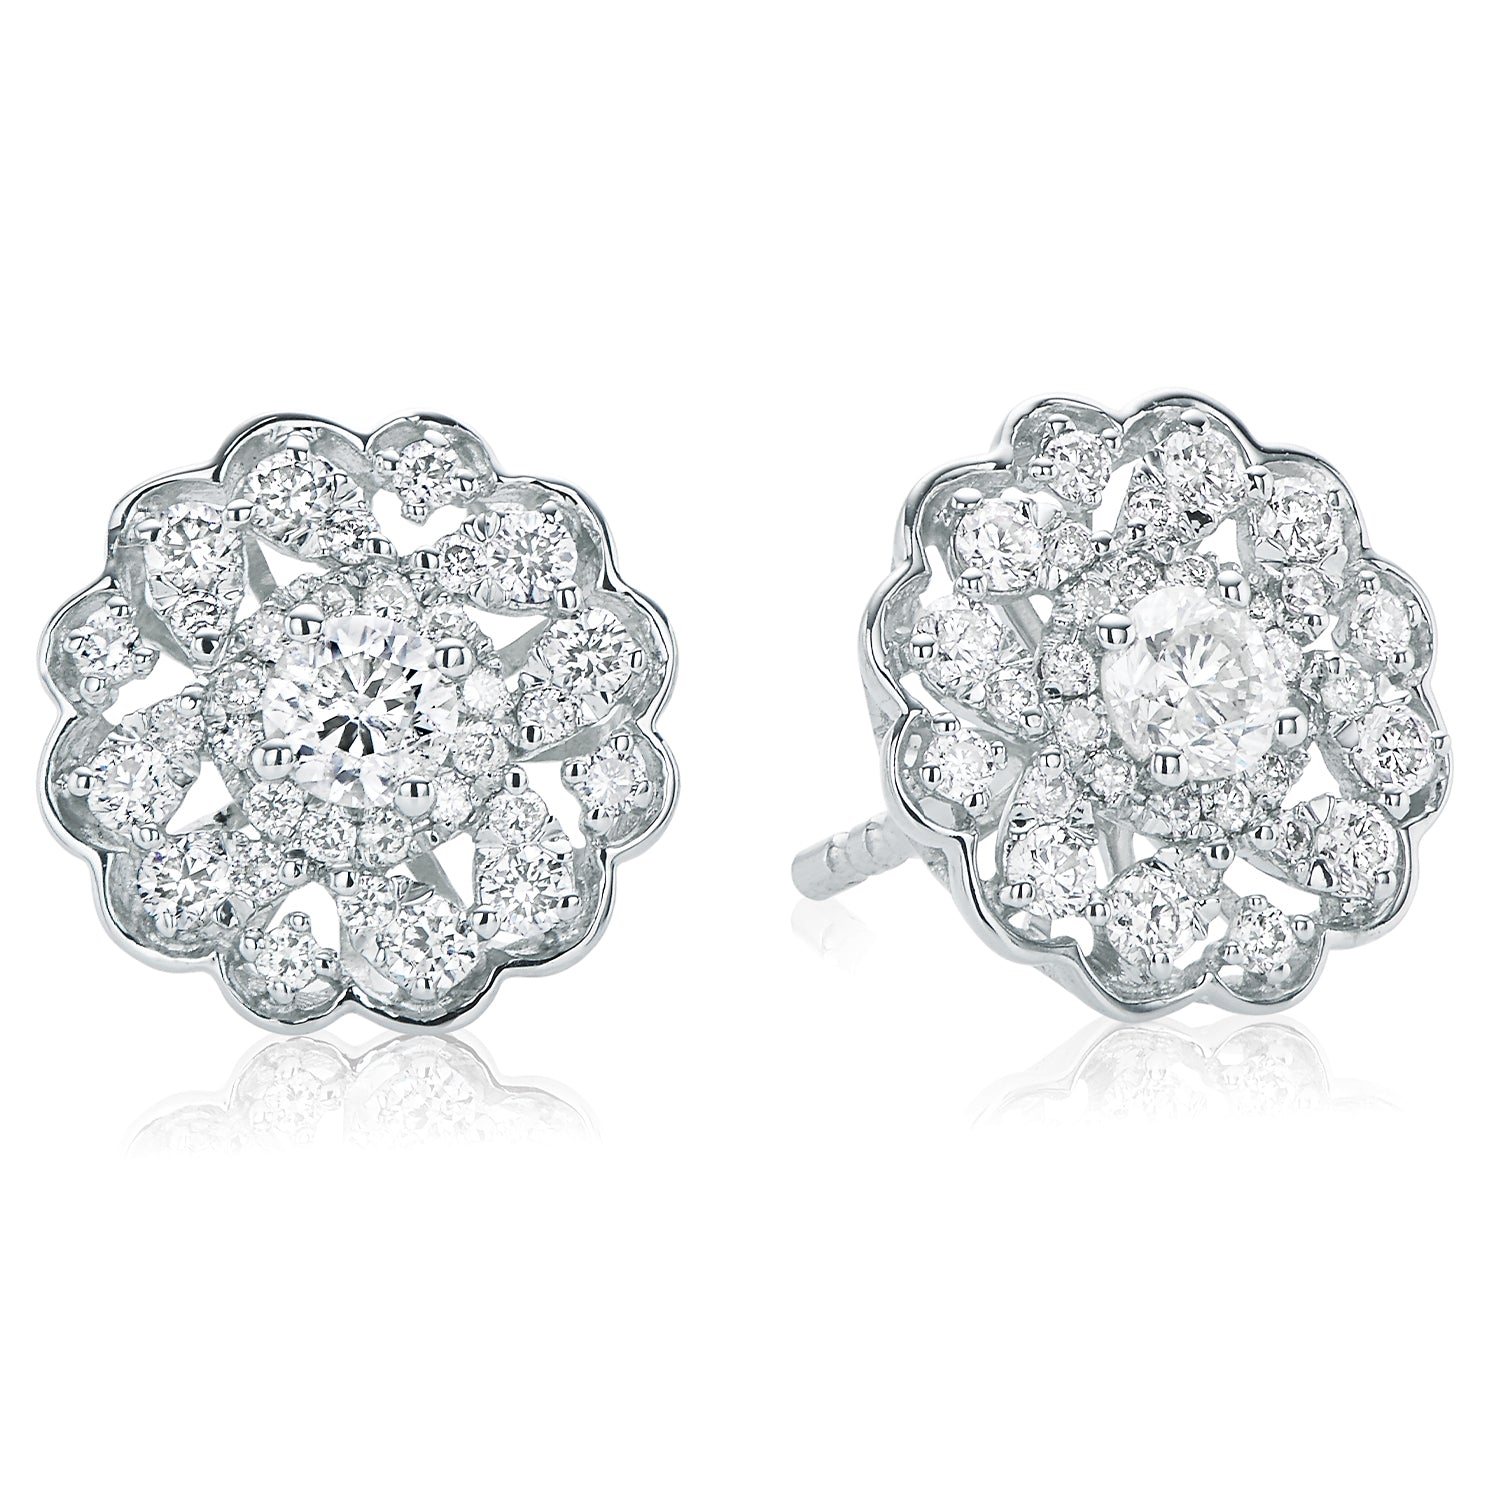 Buy Petalled Shimmery 18KT Rose Gold Diamond Earrings Online | ORRA